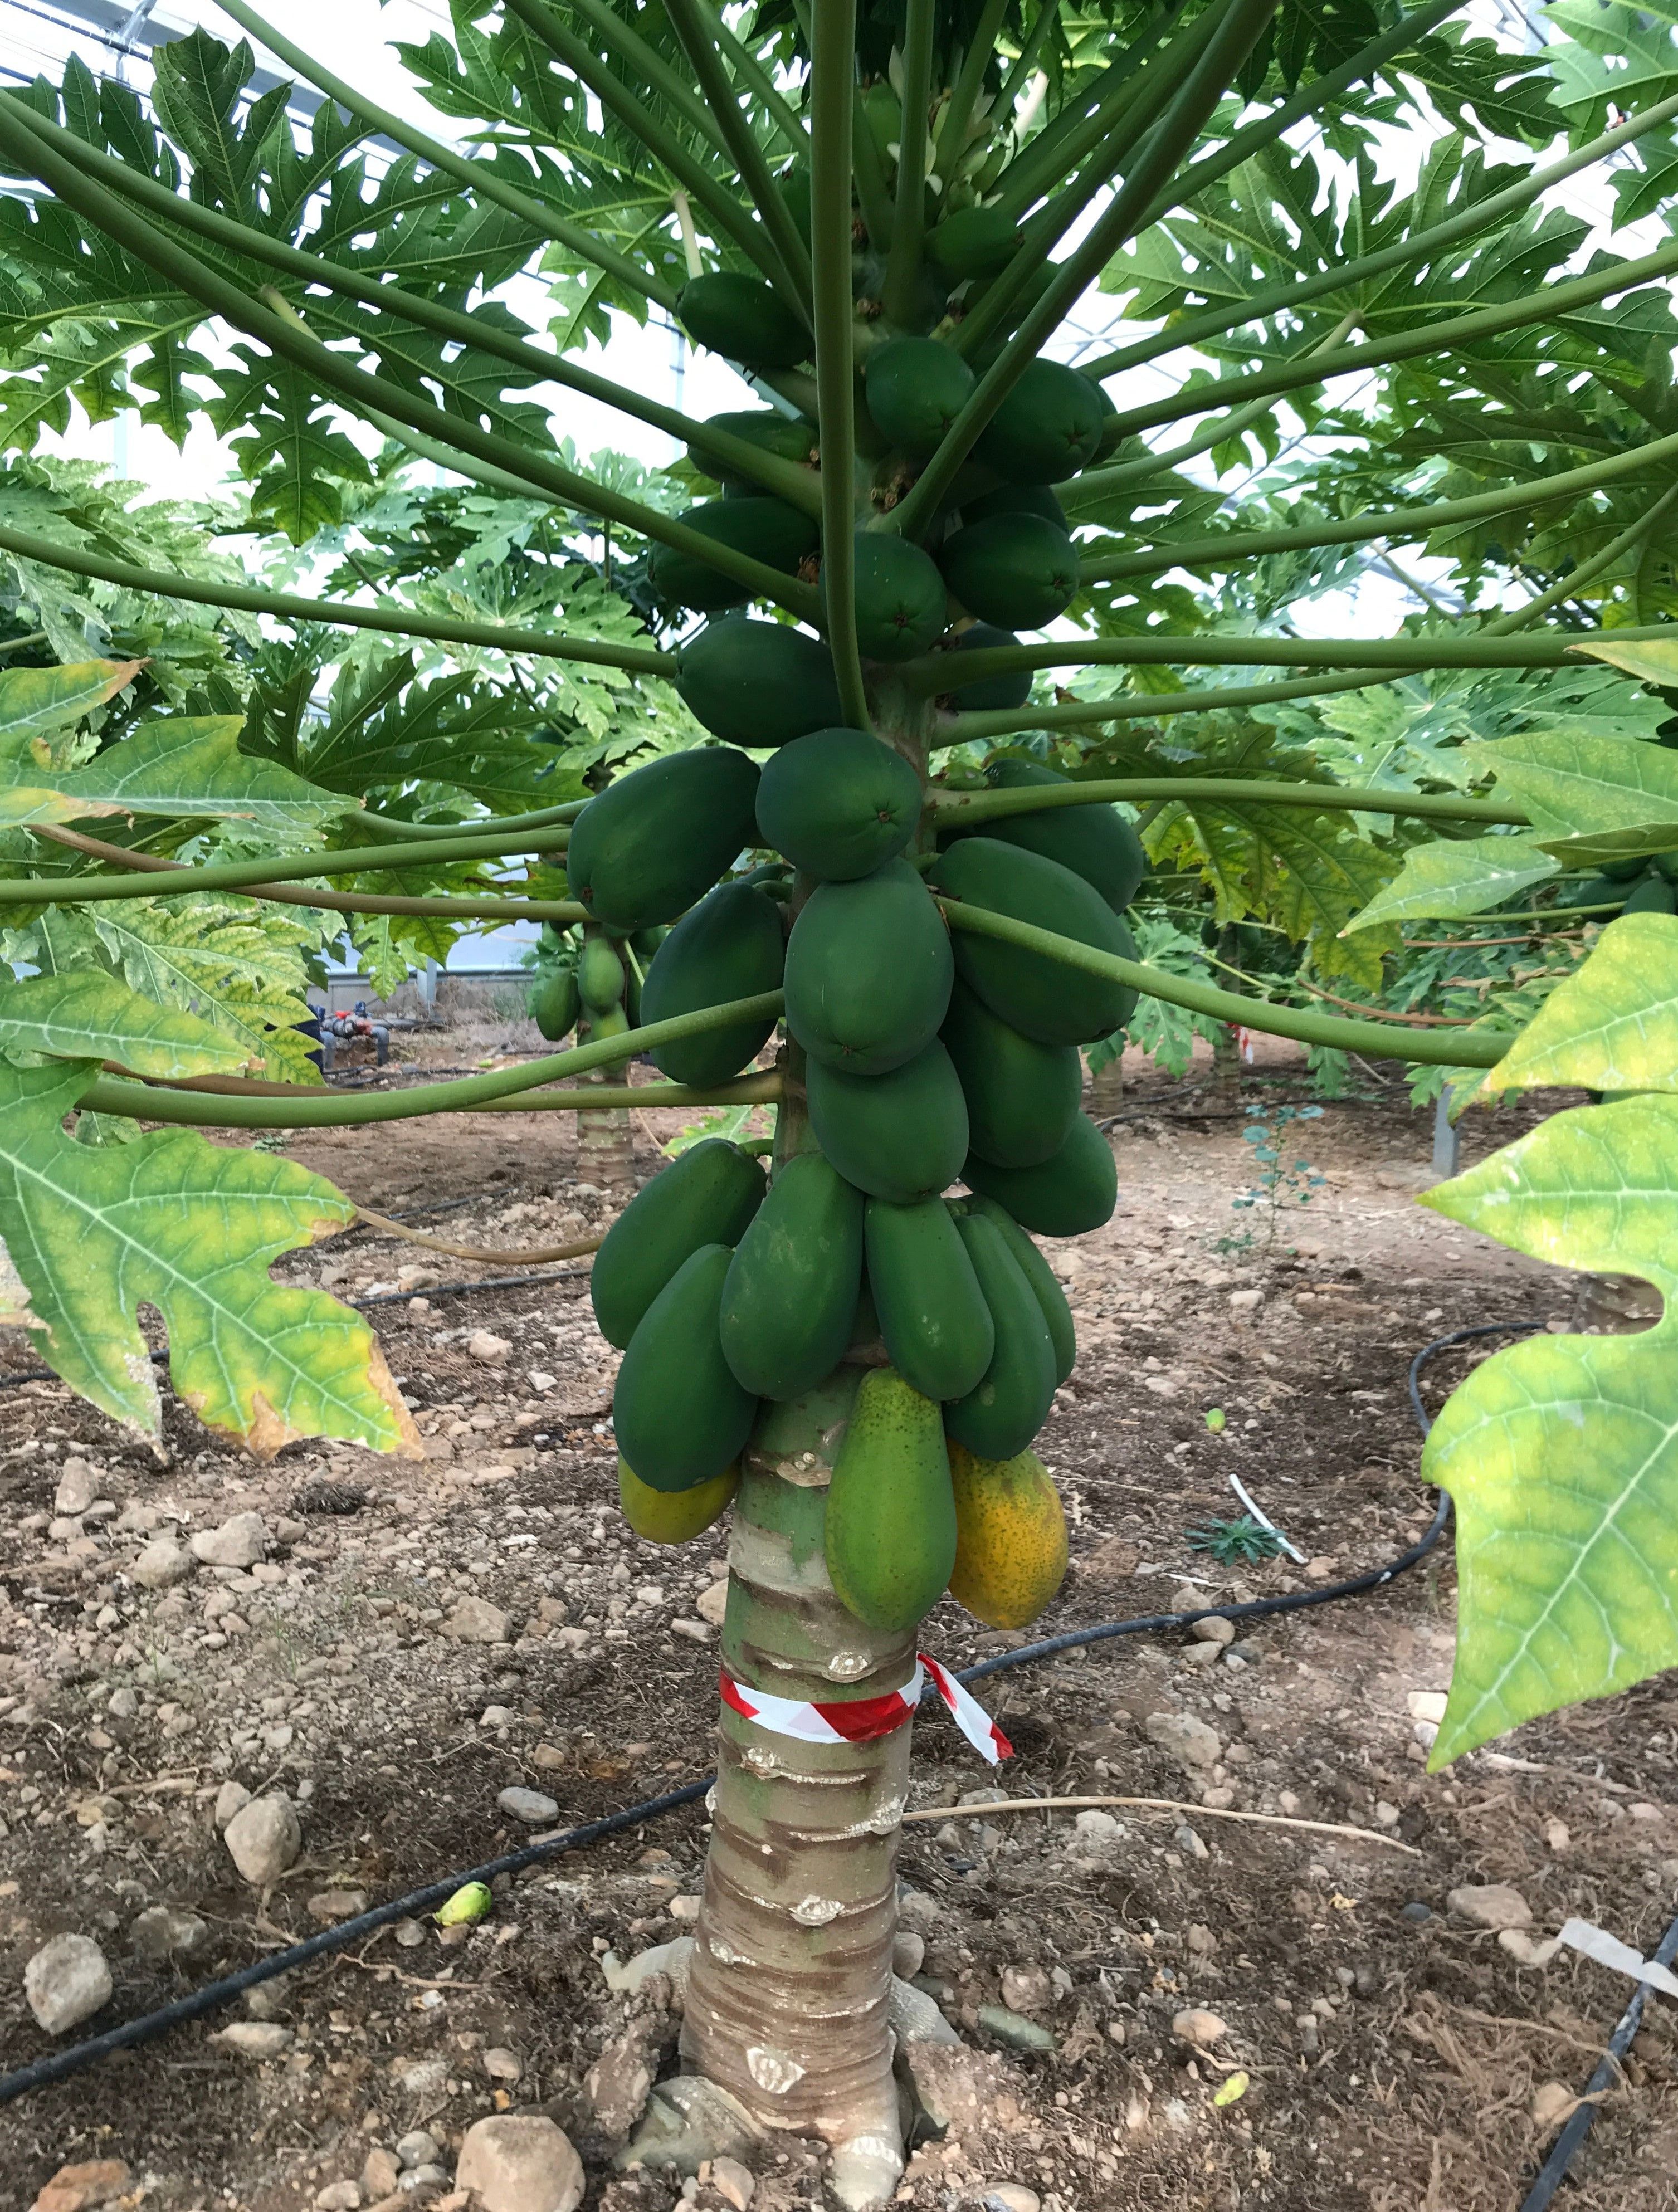 Árbol de papaya en plena producción, frutos maduros y verdes